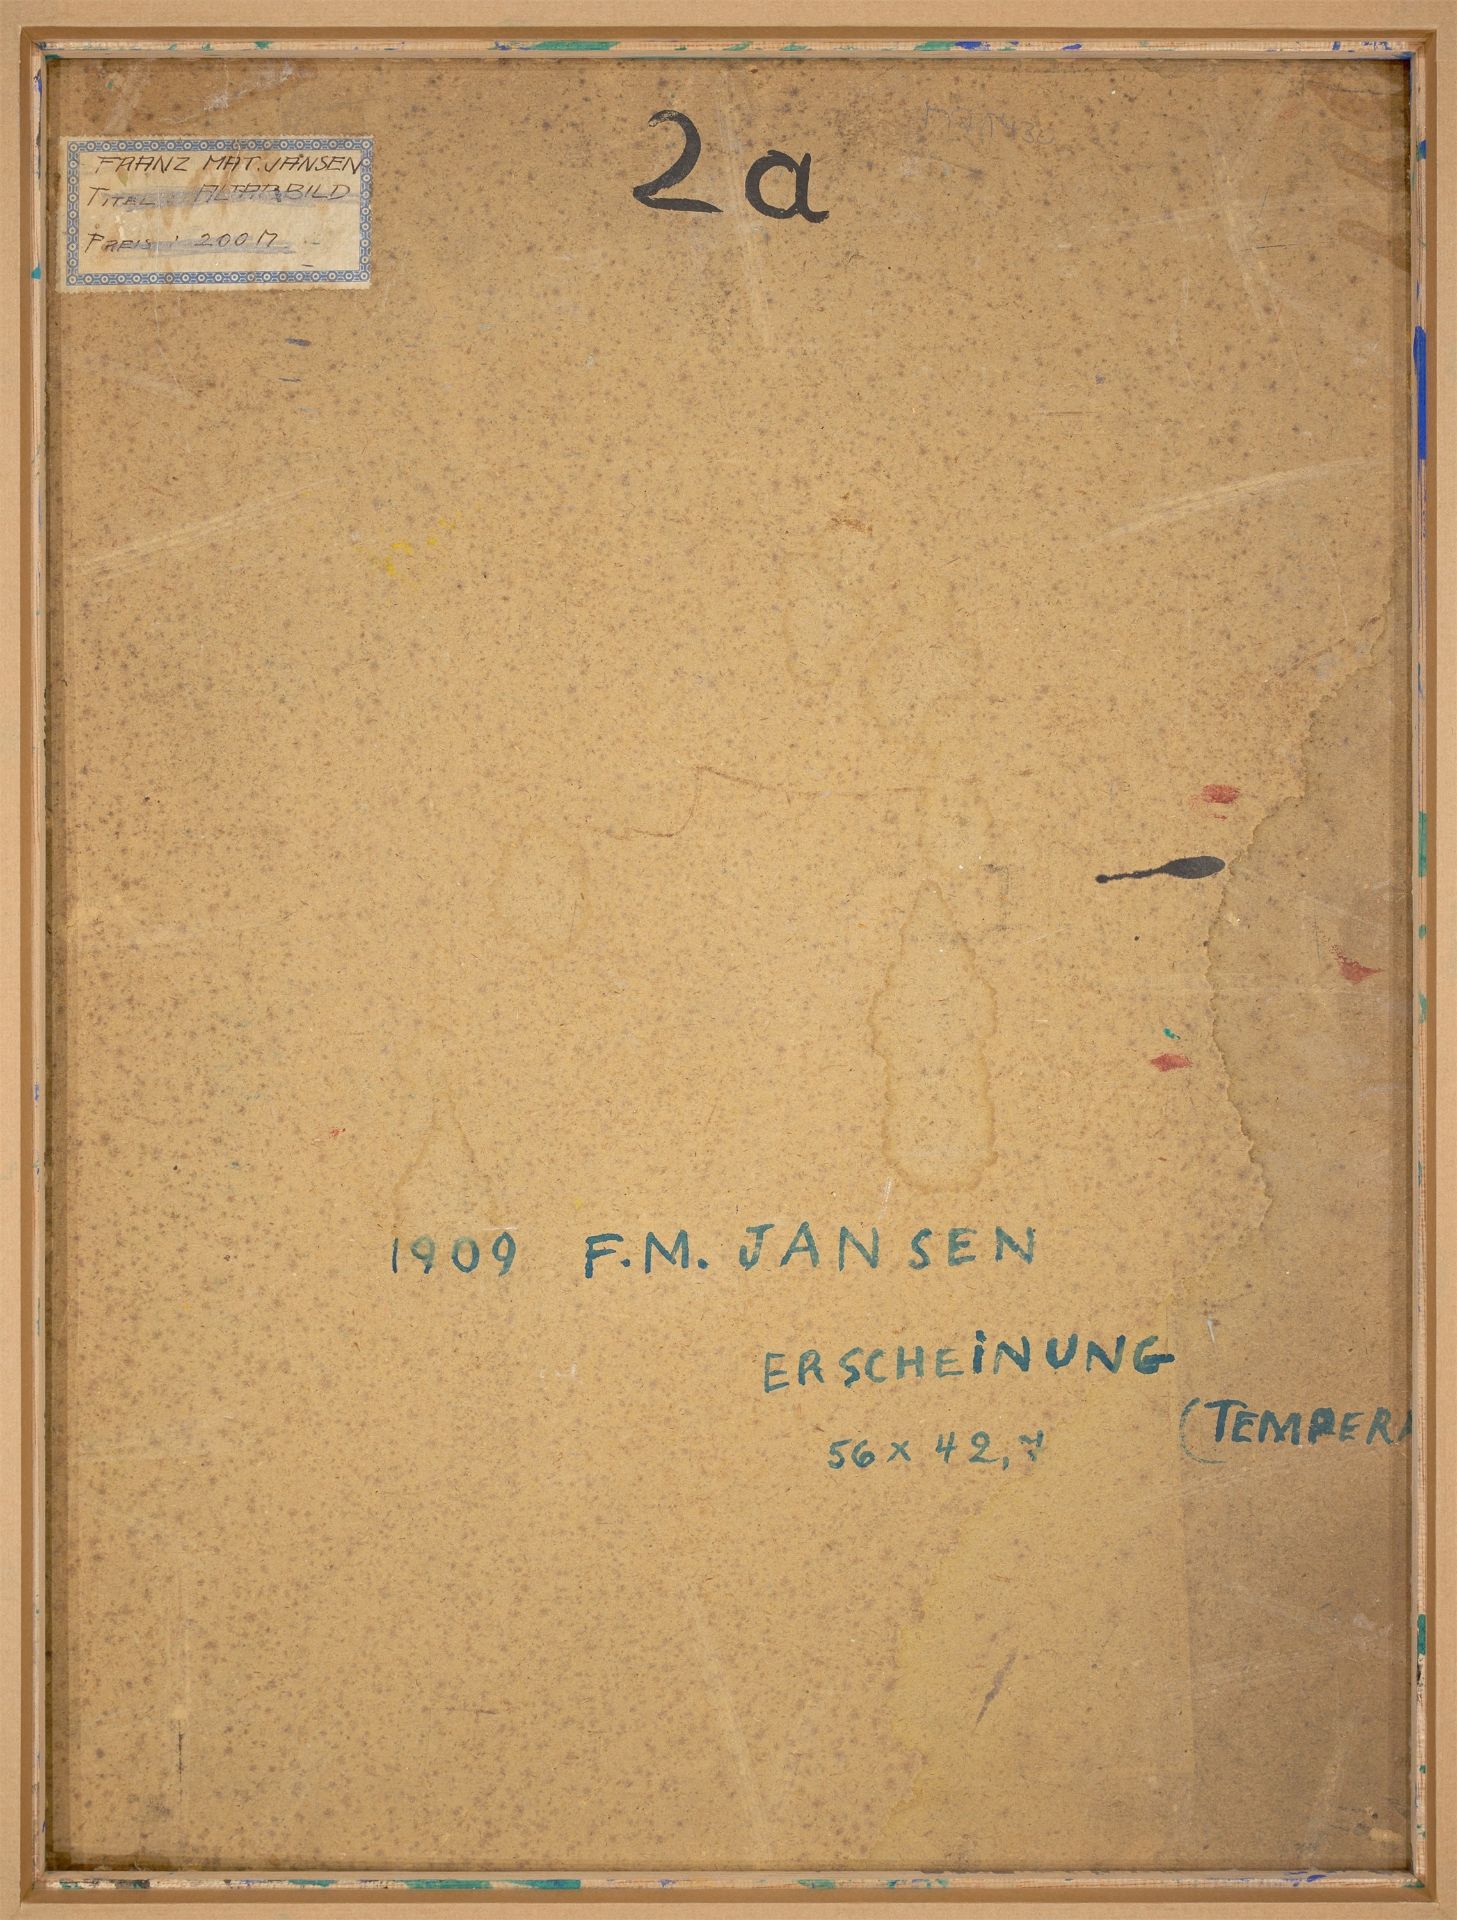 Franz M. Jansen. ”ERSCHEINUNG”. 1909 - Image 2 of 3